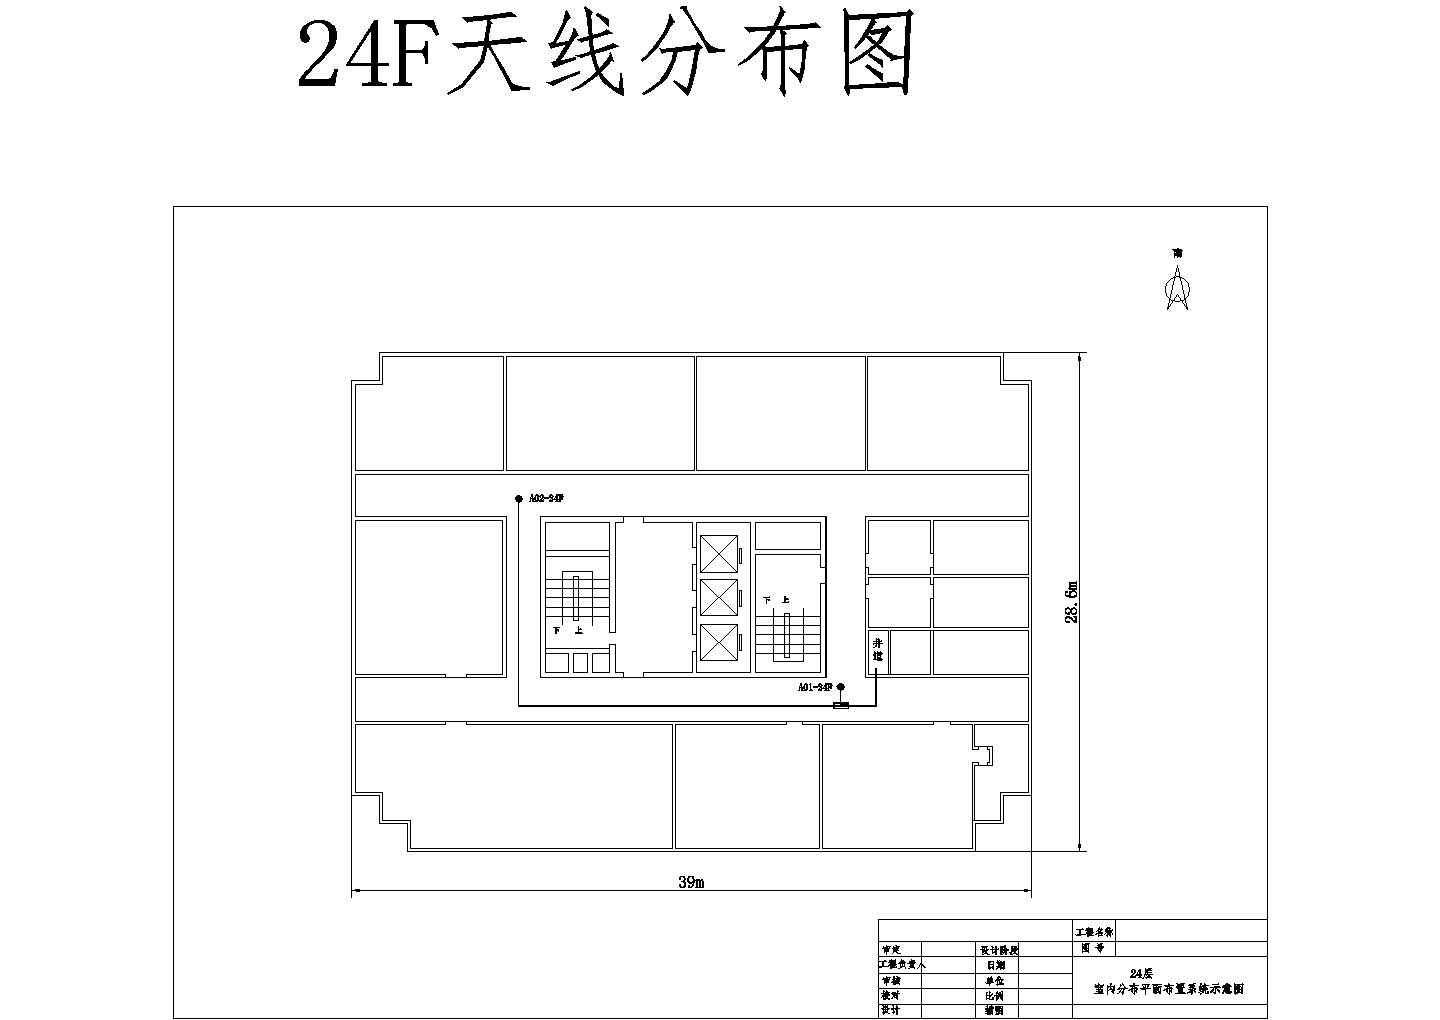 海关大厦24F天线分布图CAD图纸